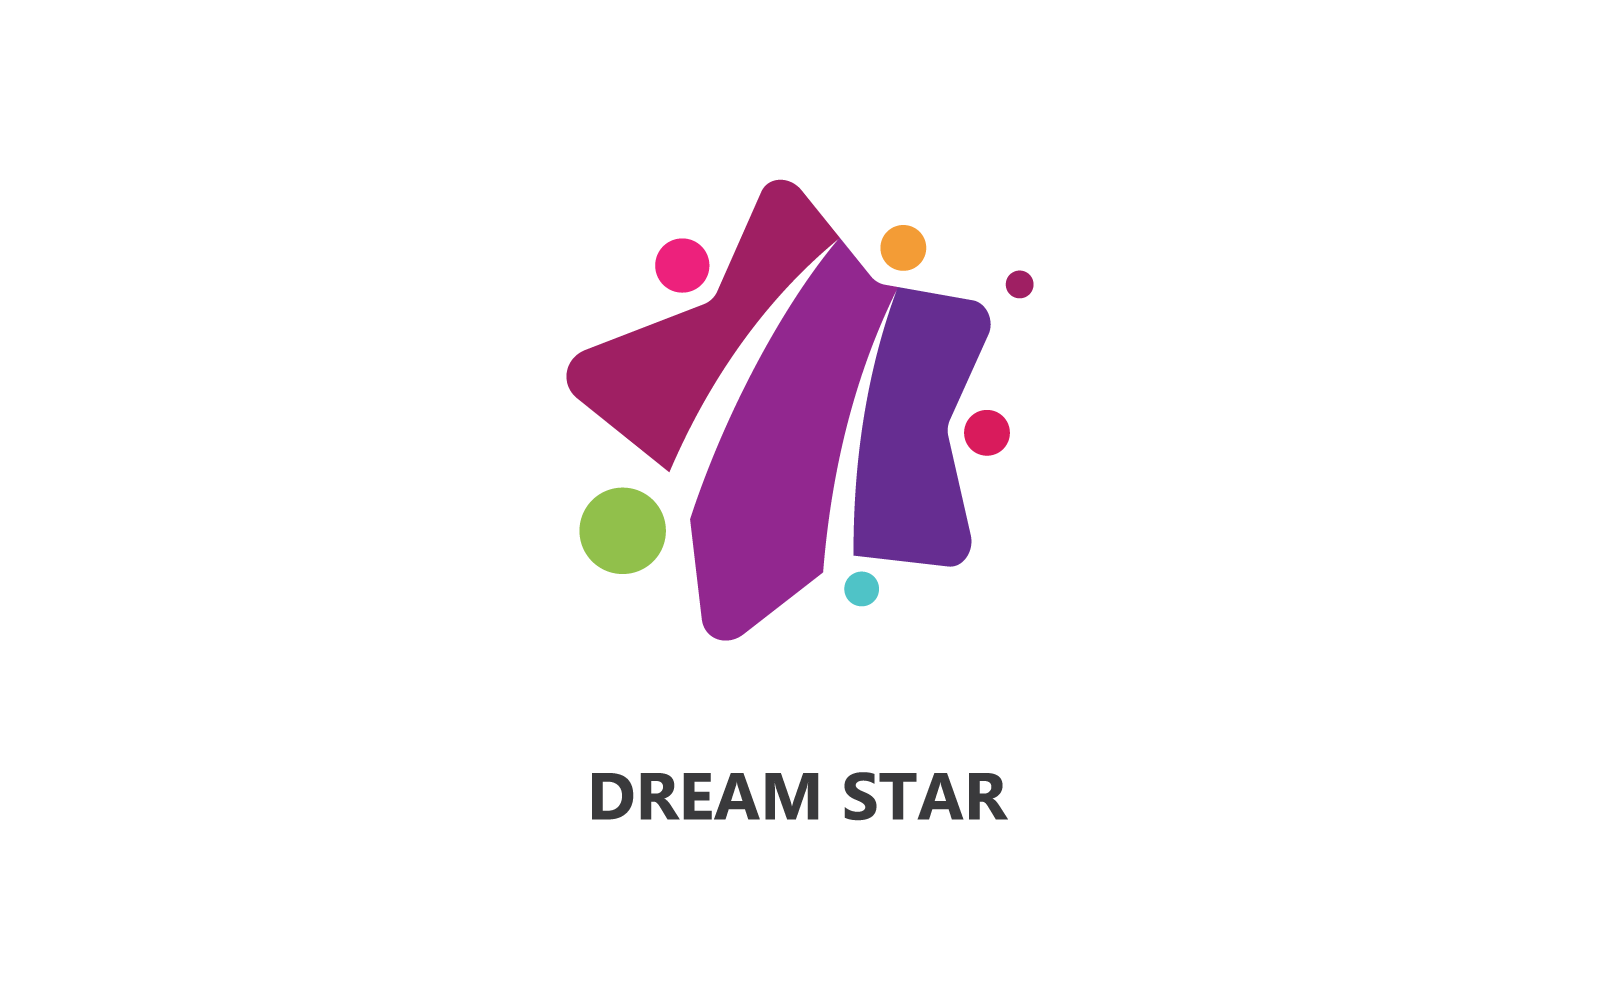 Dreams star logo vector design template Logo Template